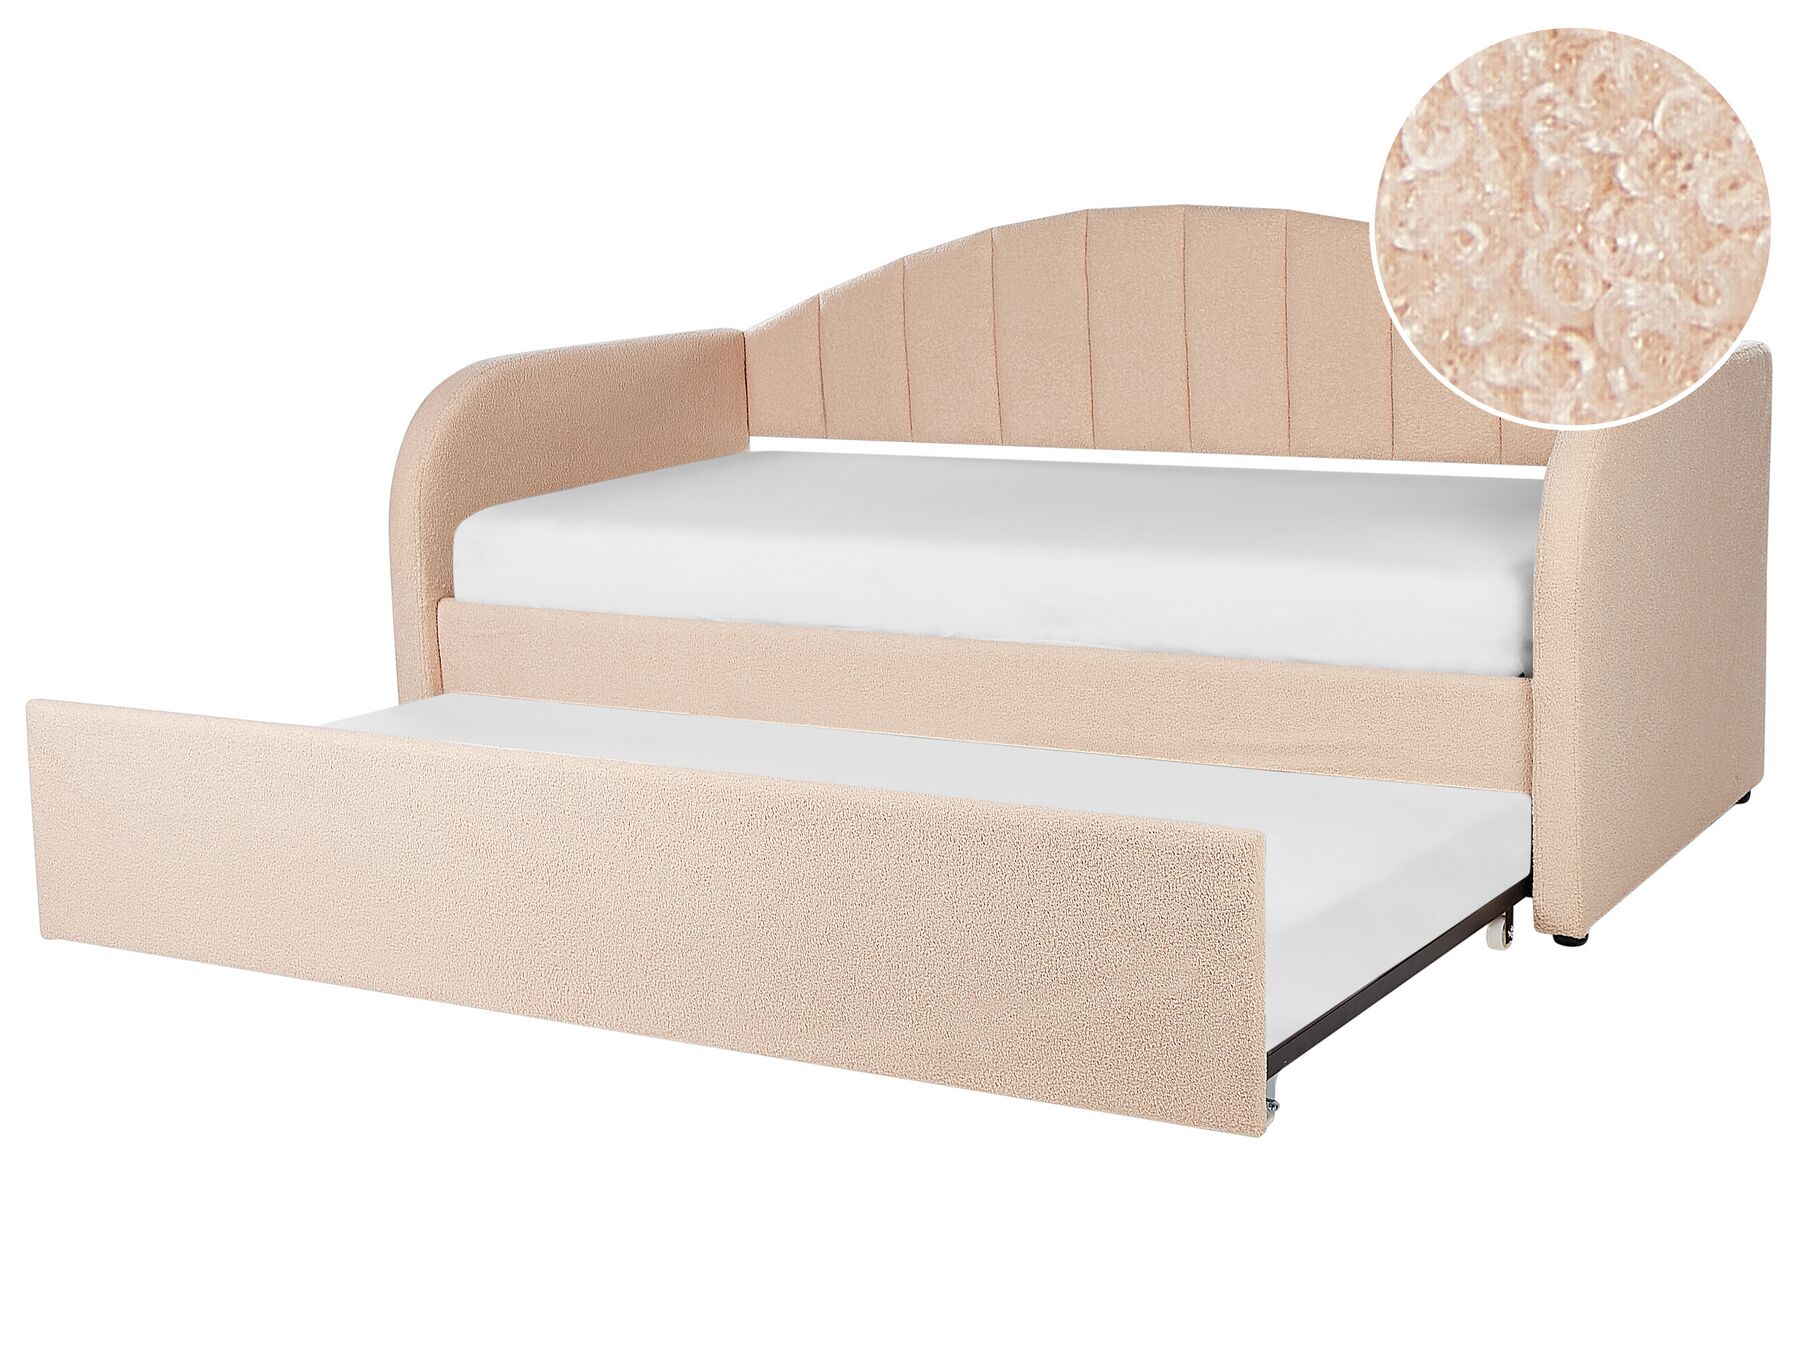 Rozkladacia posteľ s buklé čalúnením 90 x 200 cm broskyňová EYBURIE_907131